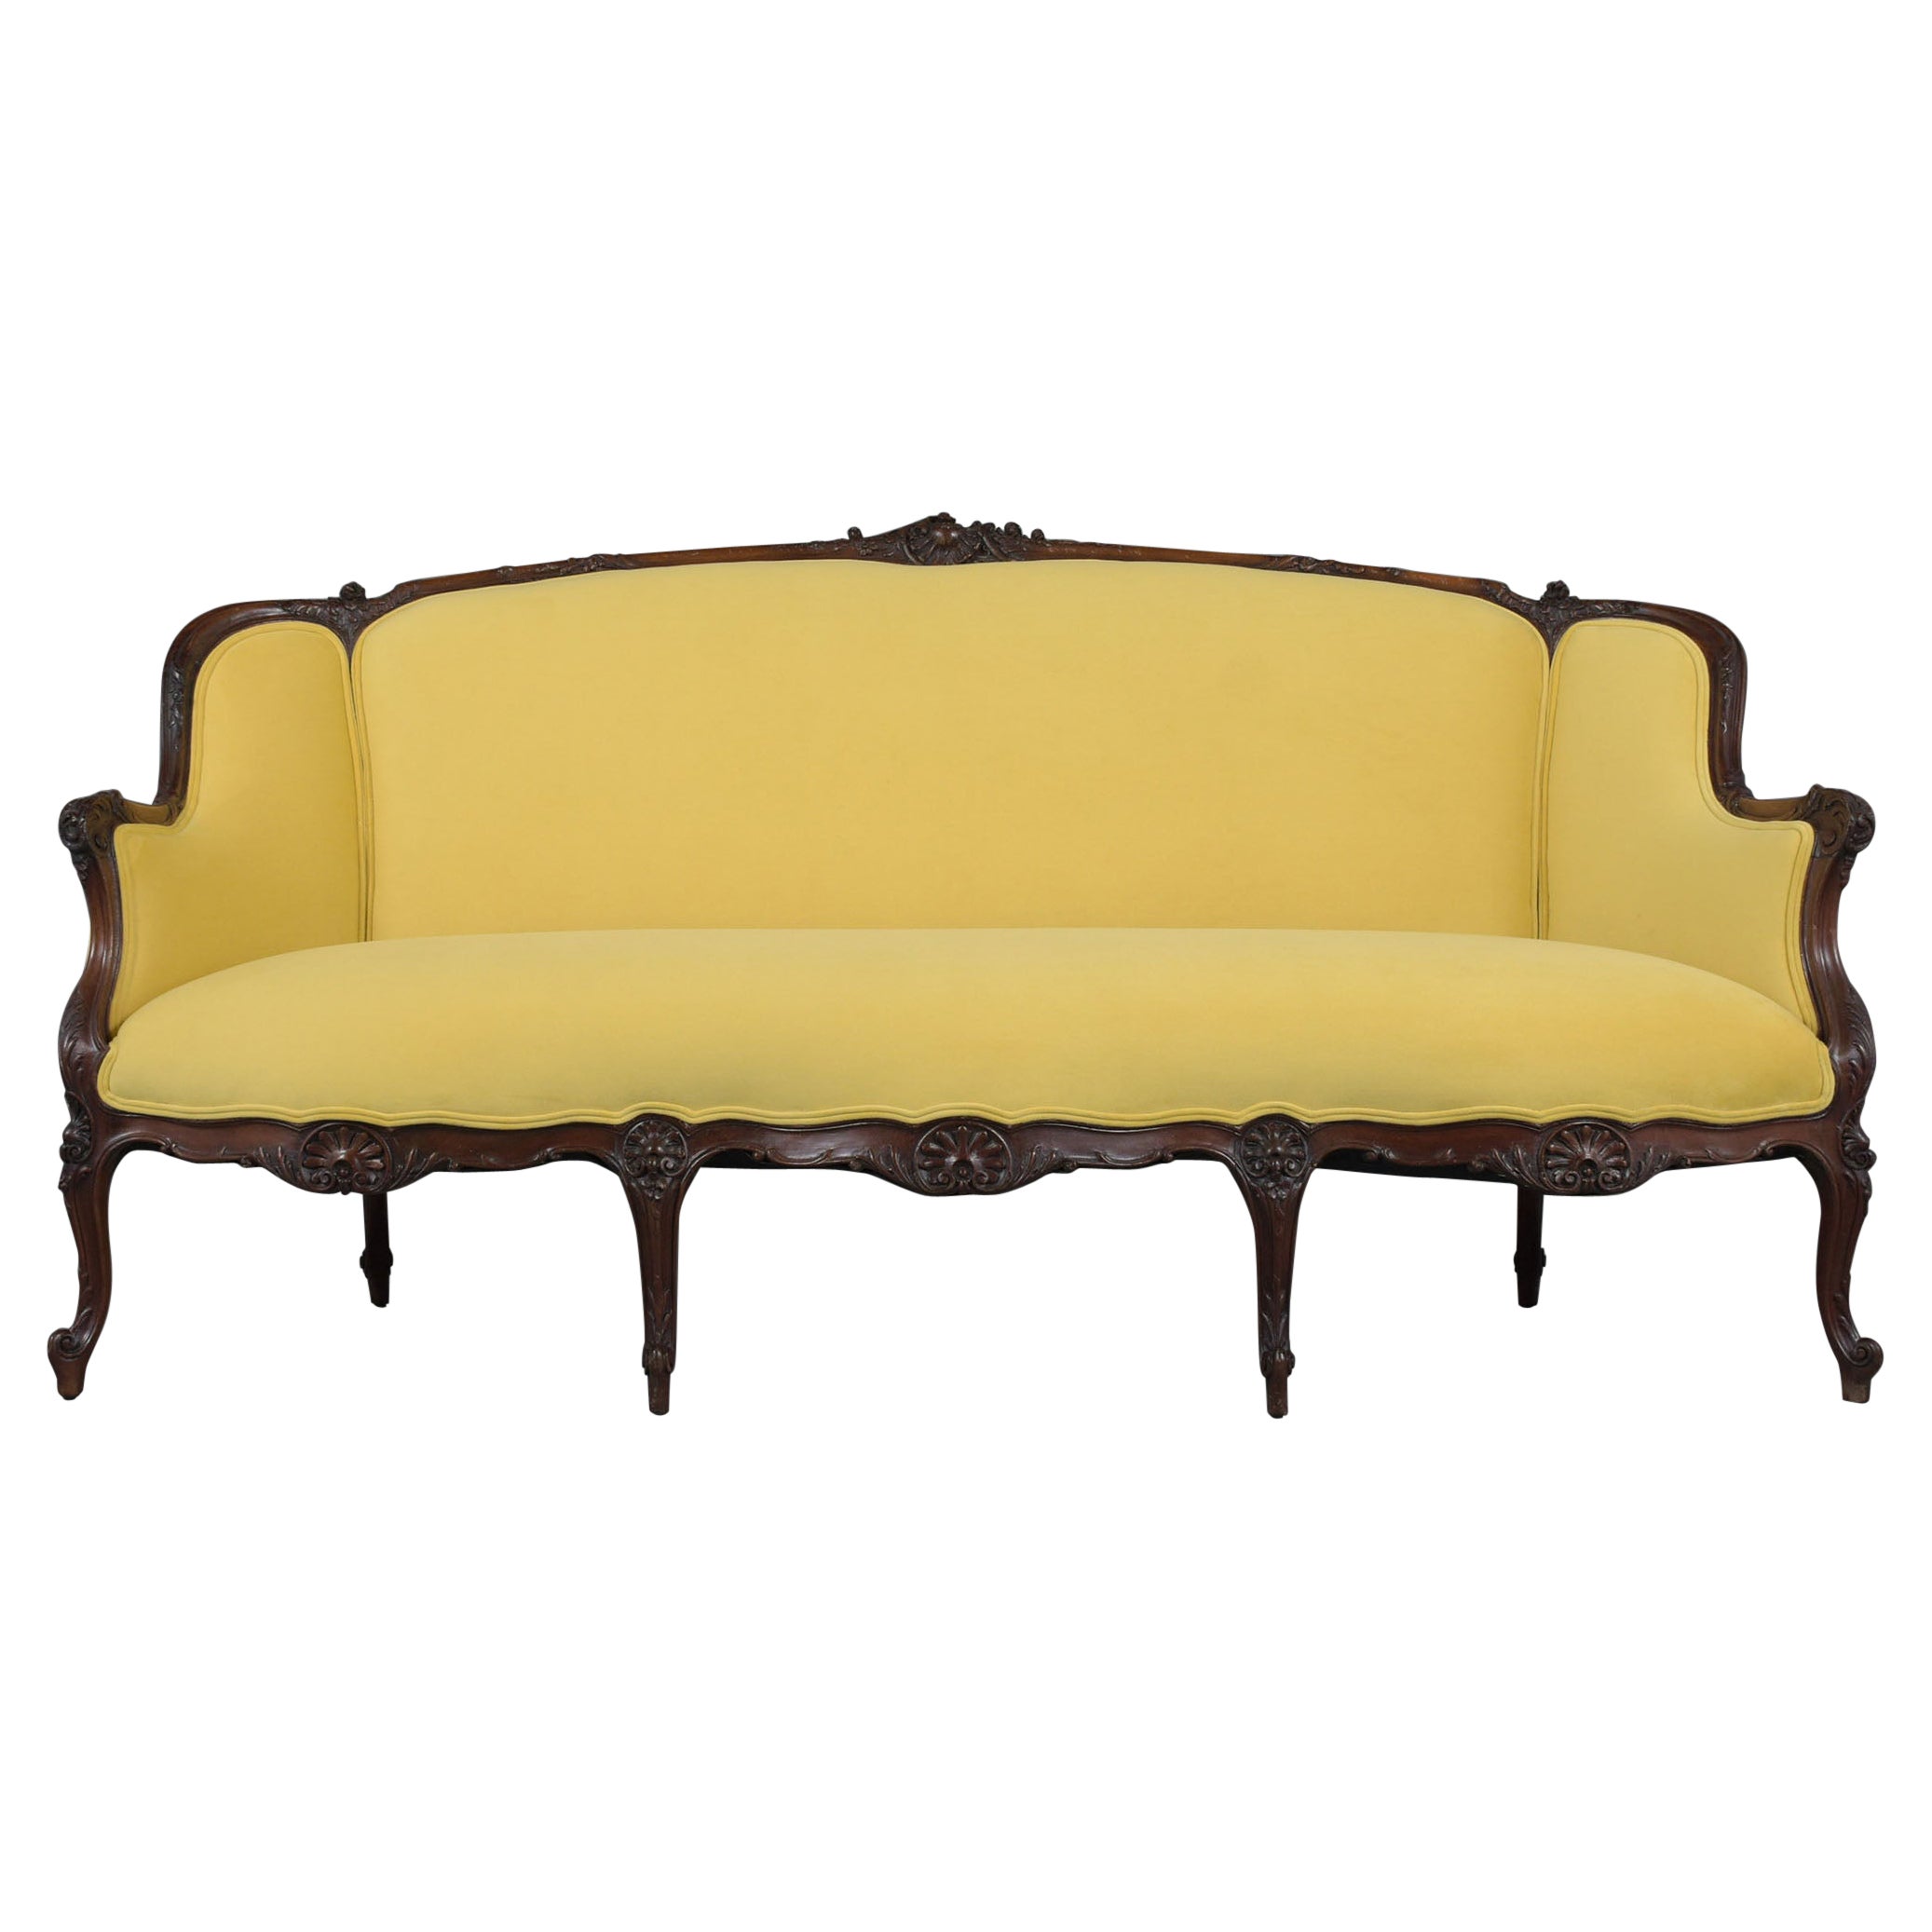 Antique French Louis XVI Sofa